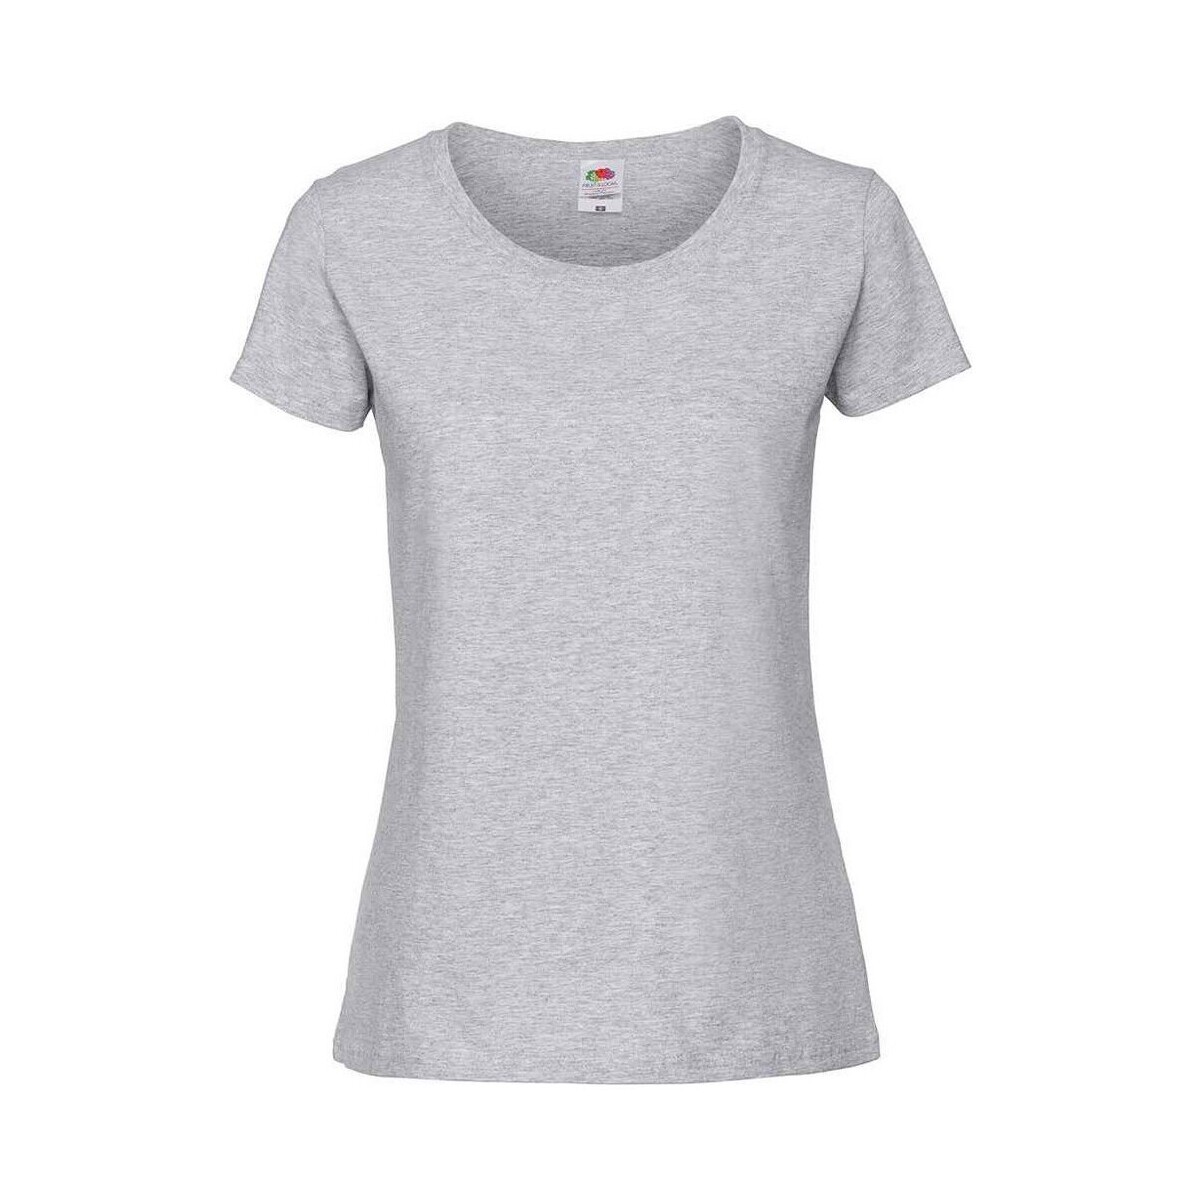 Vêtements Femme T-shirts manches longues Fruit Of The Loom Premium Gris